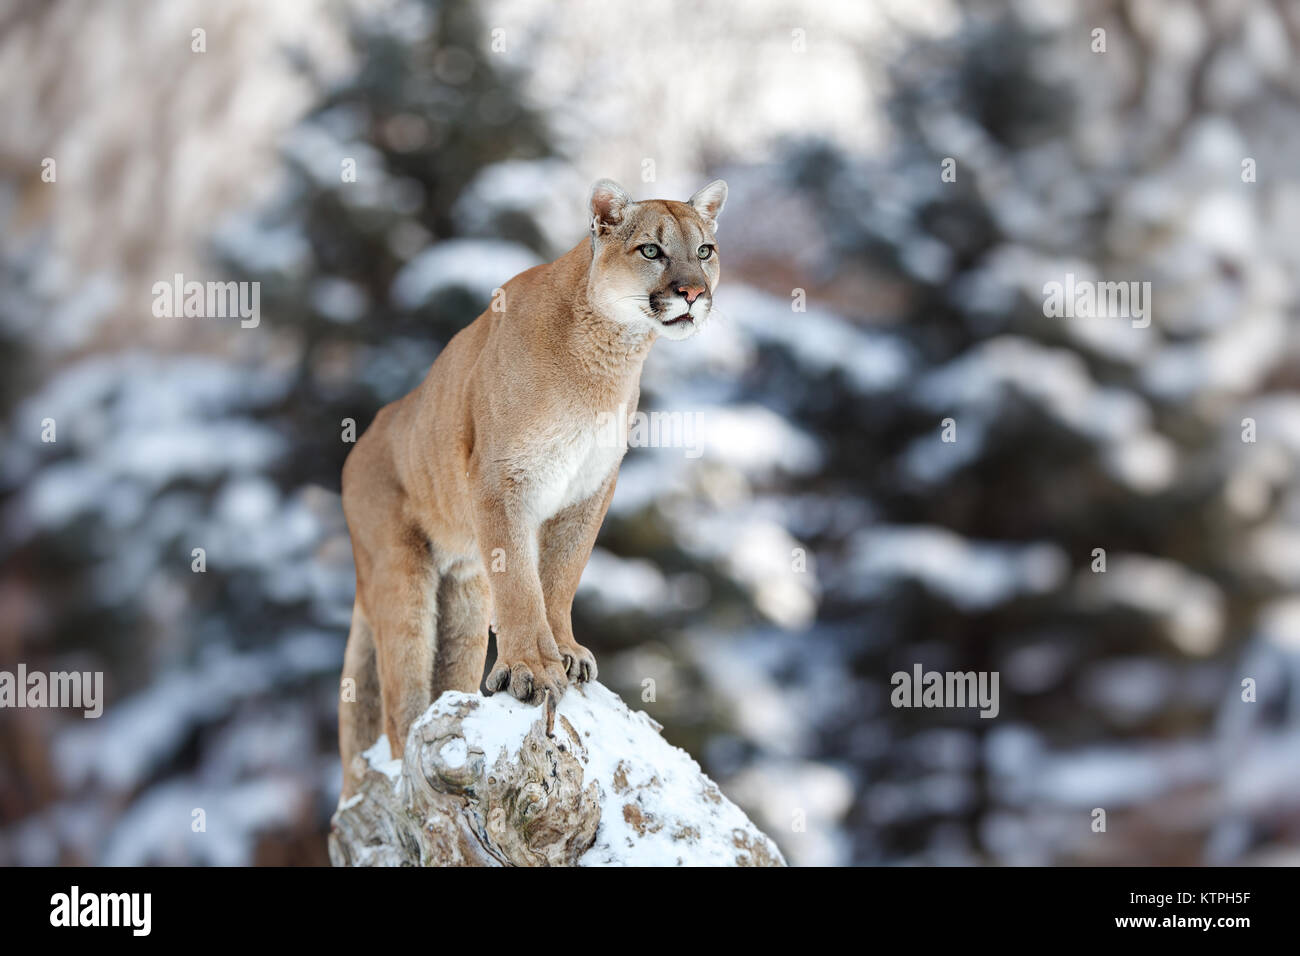 Portrait d'un couguar, mountain lion, puma, panthère, trouver une pose sur  un arbre tombé, scène d'hiver dans les bois Photo Stock - Alamy